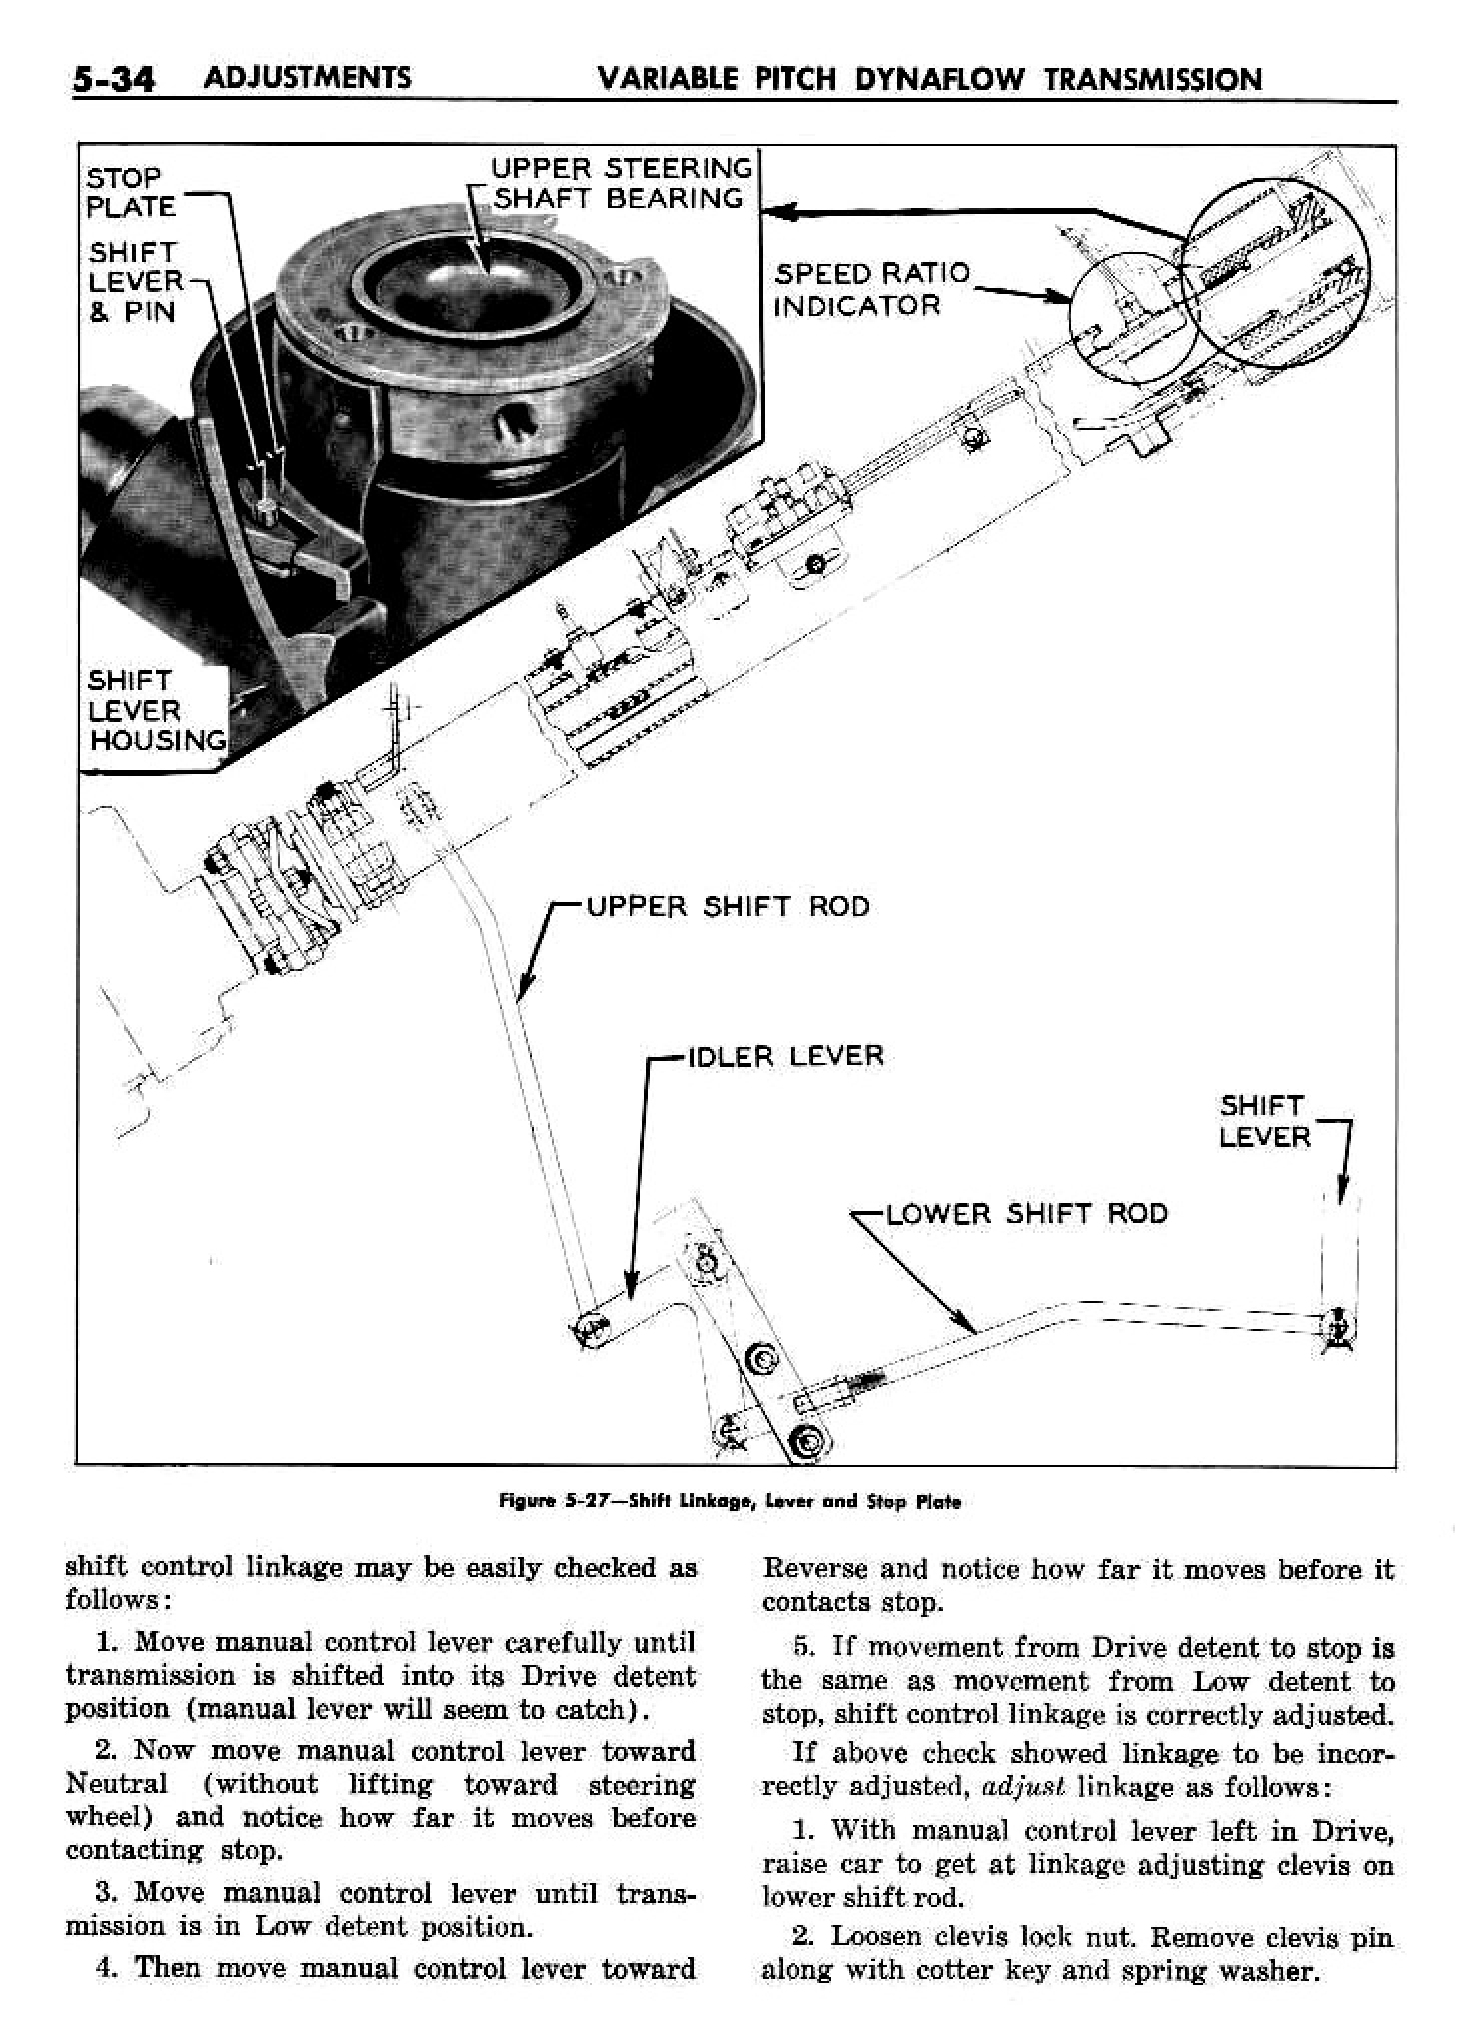 n_06 1958 Buick Shop Manual - Dynaflow_34.jpg